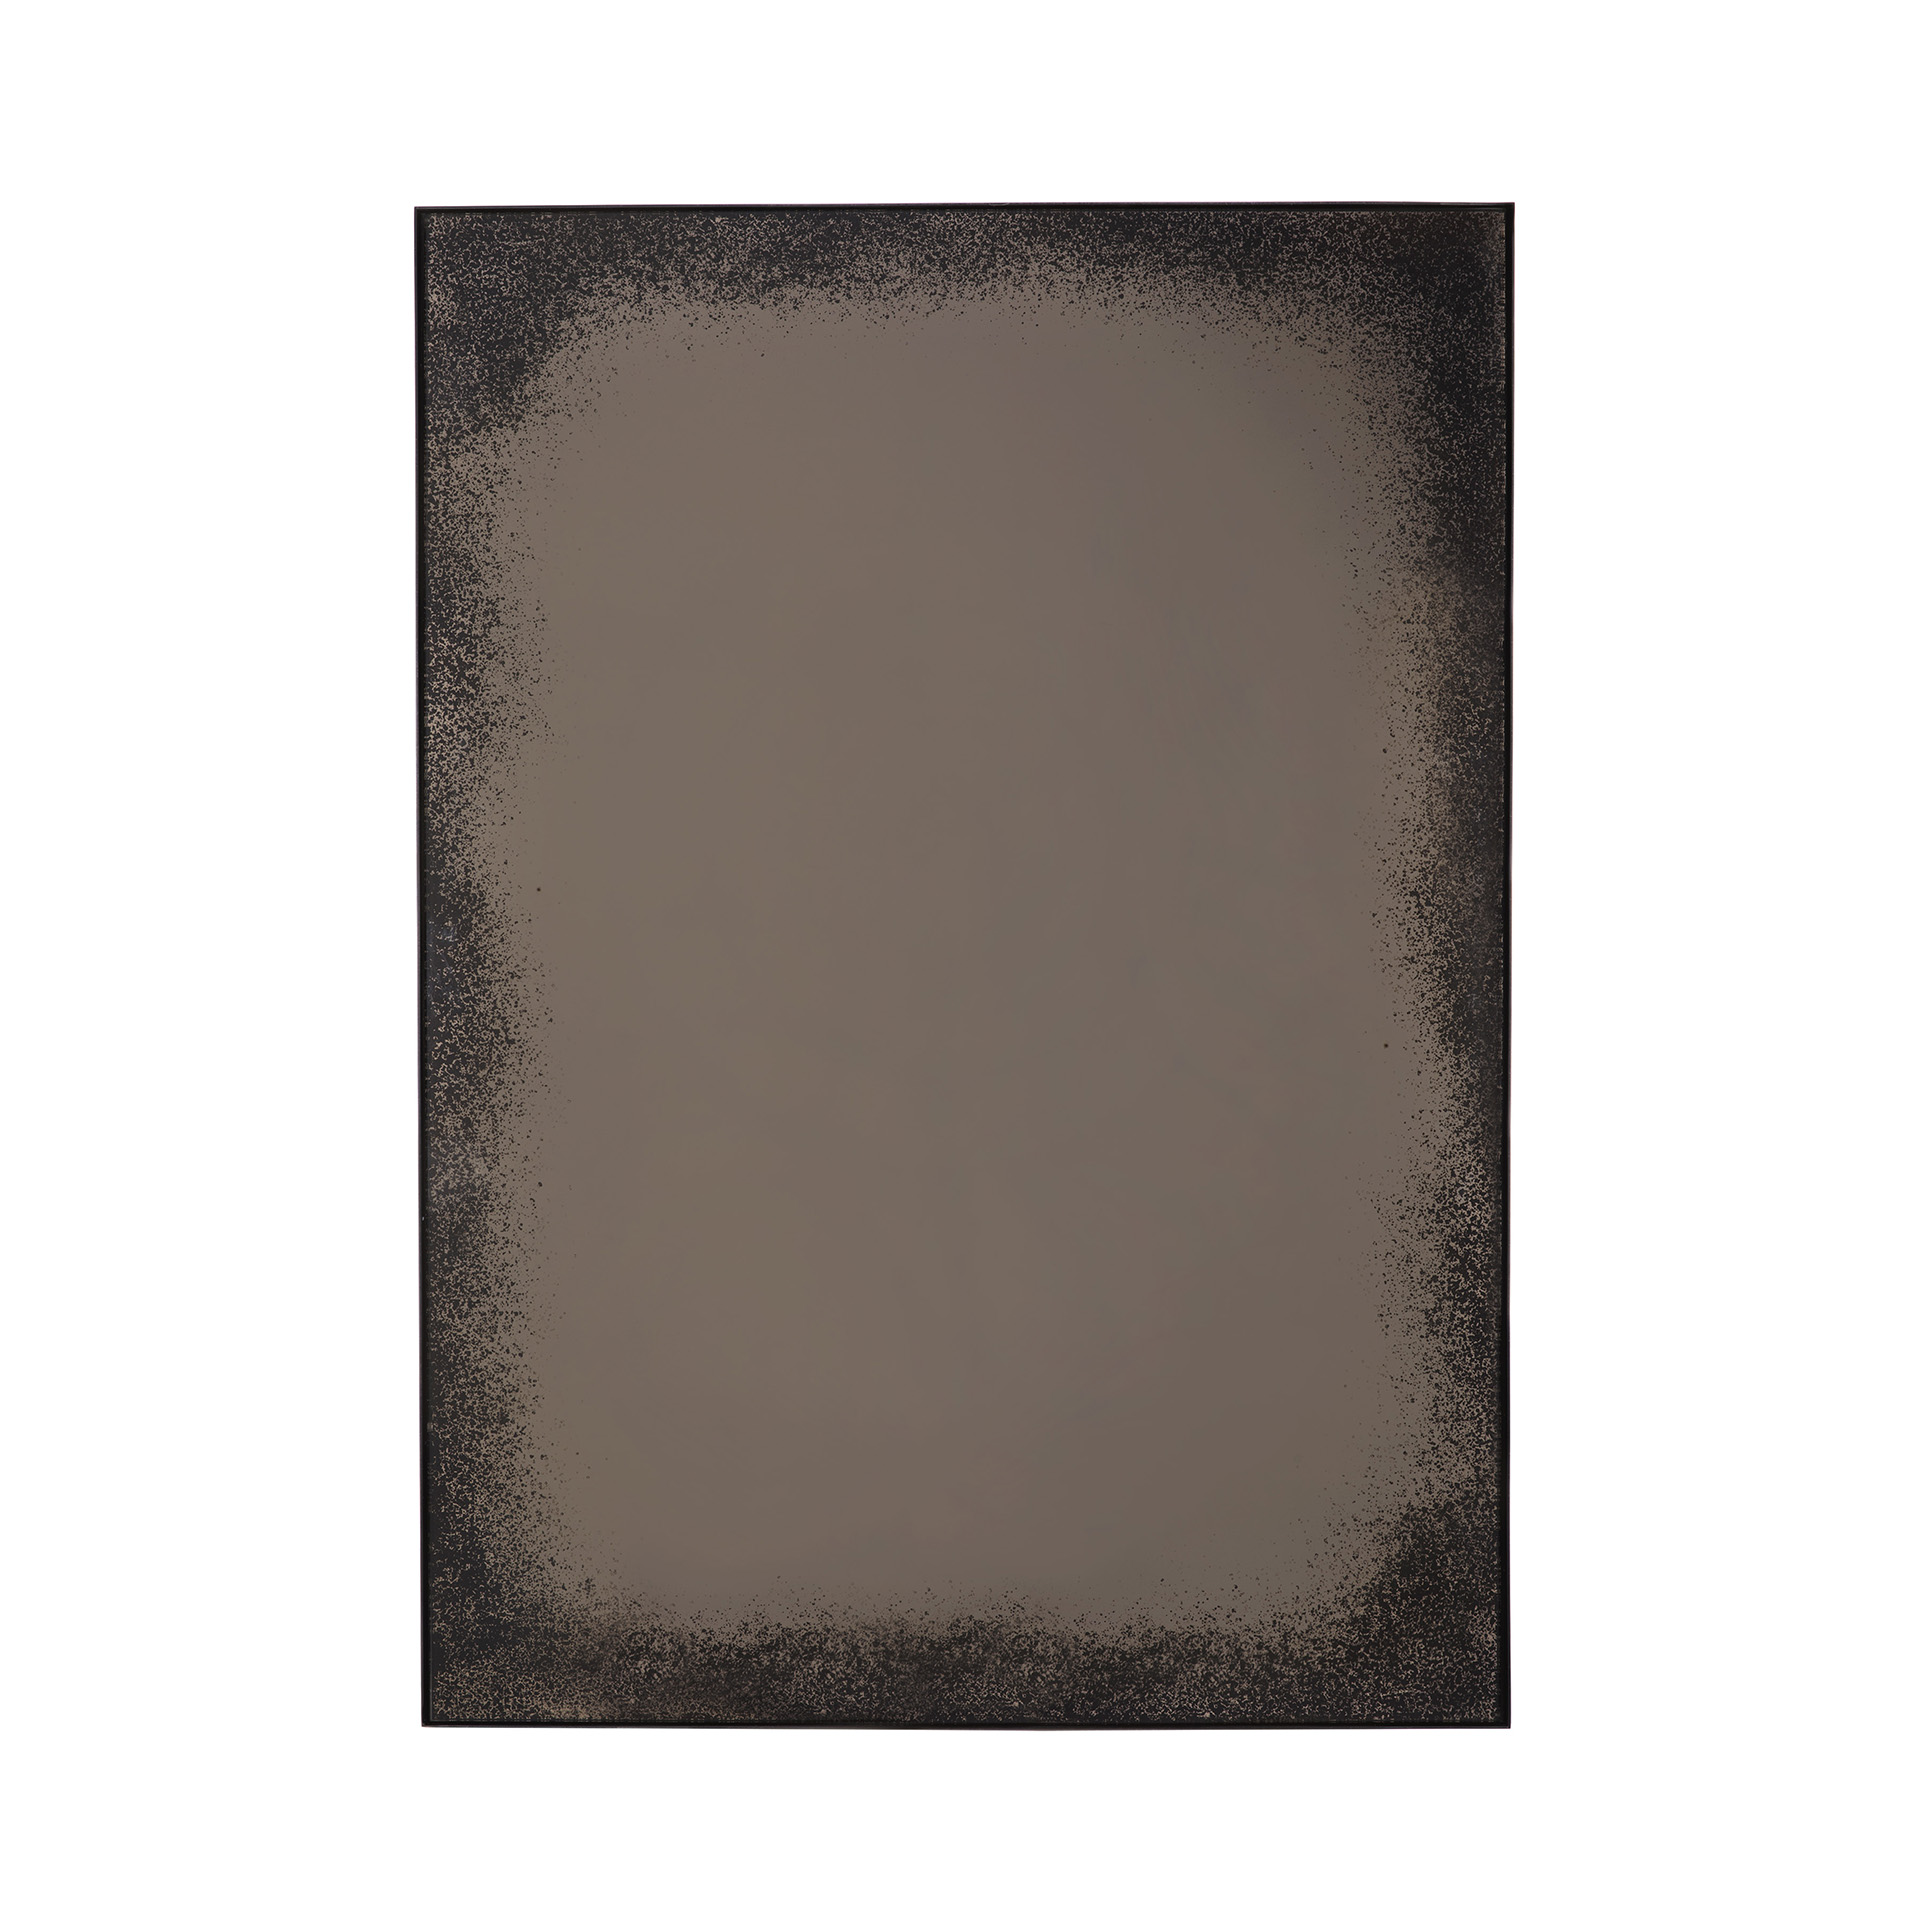 Ethnicraft - Aged Bronze muurspiegel zwart metaal frame (76 x 3 x 106 cm)